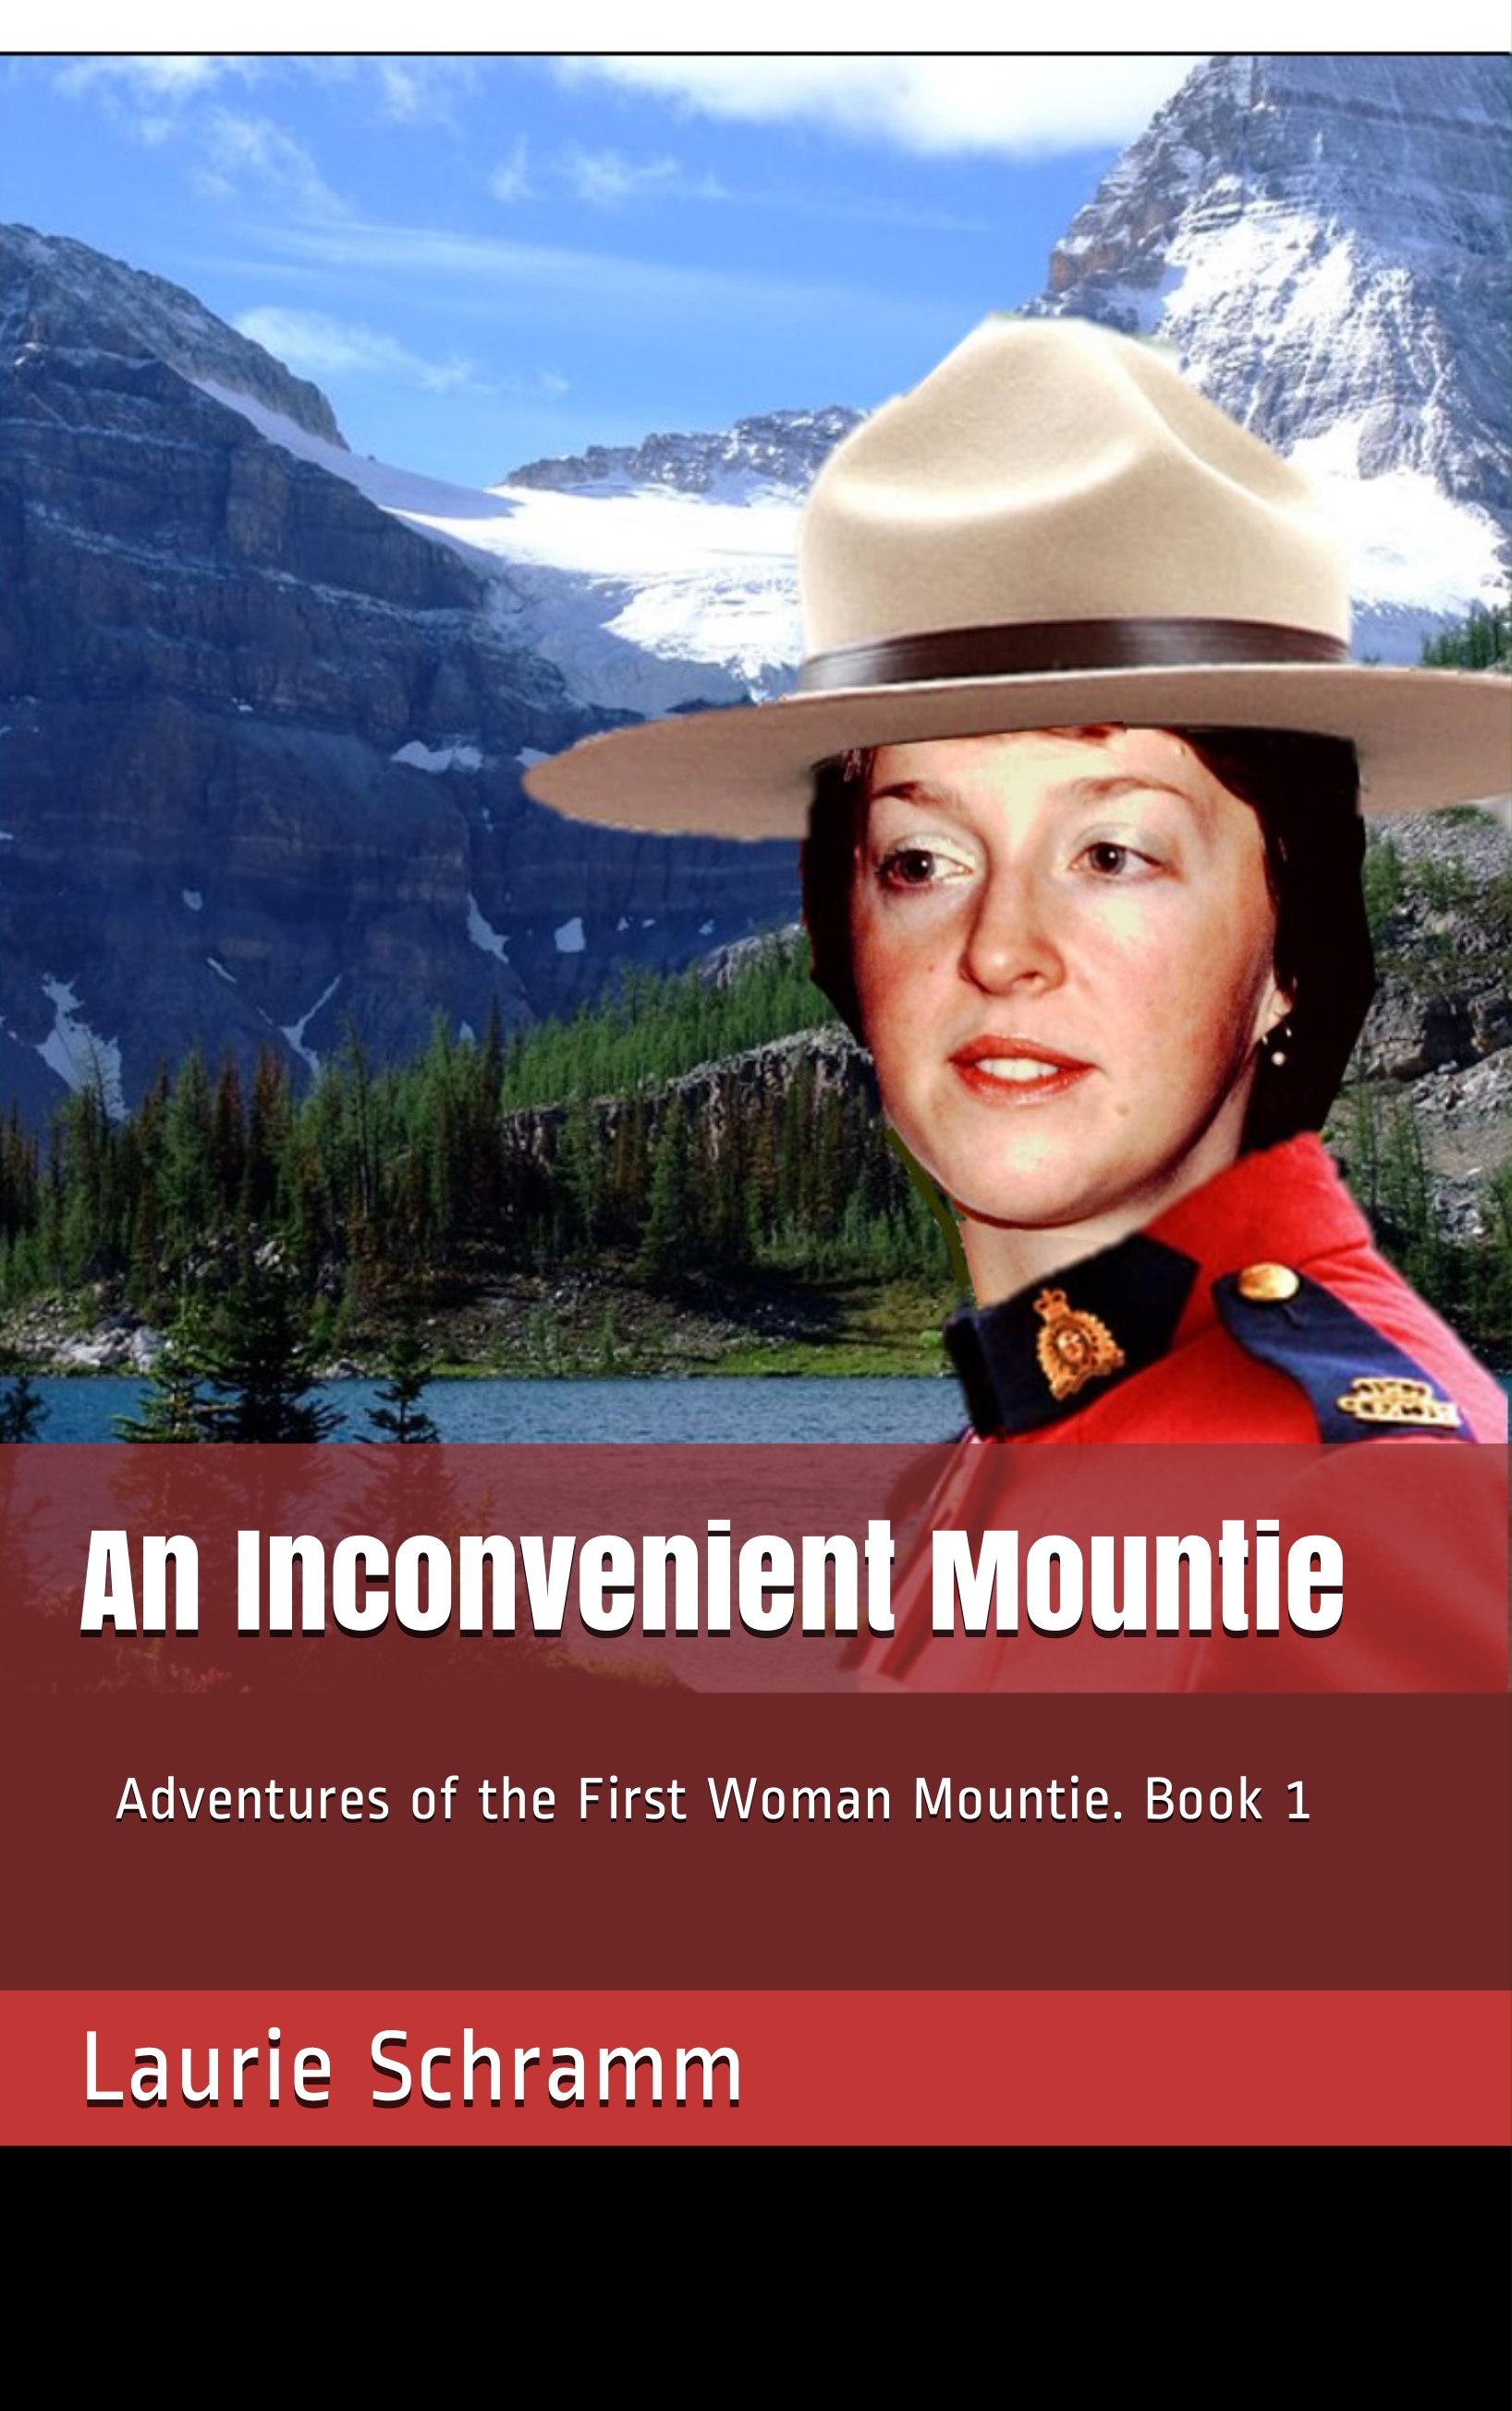 An Inconvenient Mountie